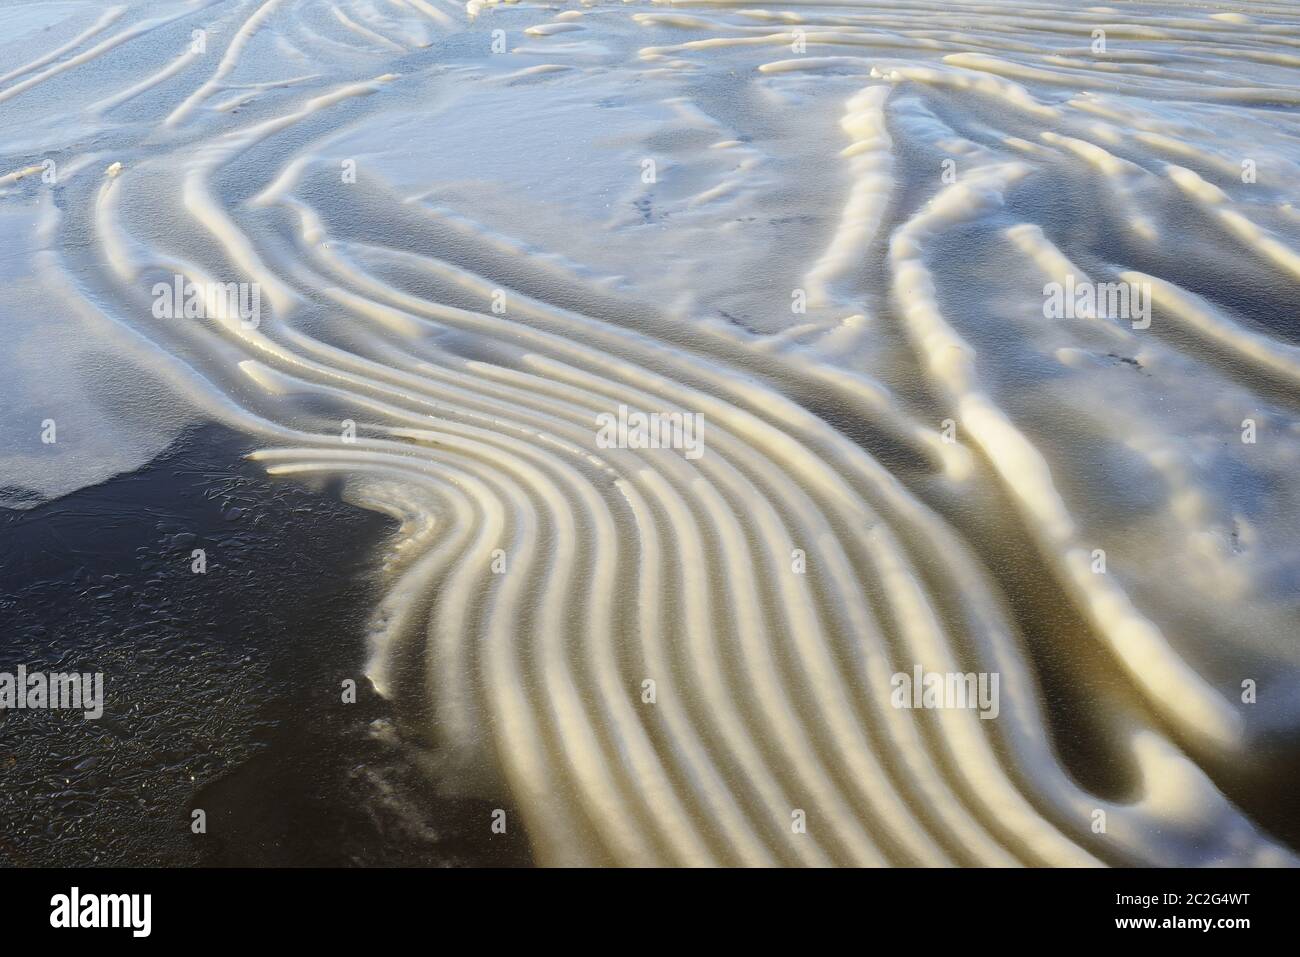 Stropicciata del ghiaccio sulla superficie del lago in Finlandia, un interessante fenomeno naturale Foto Stock